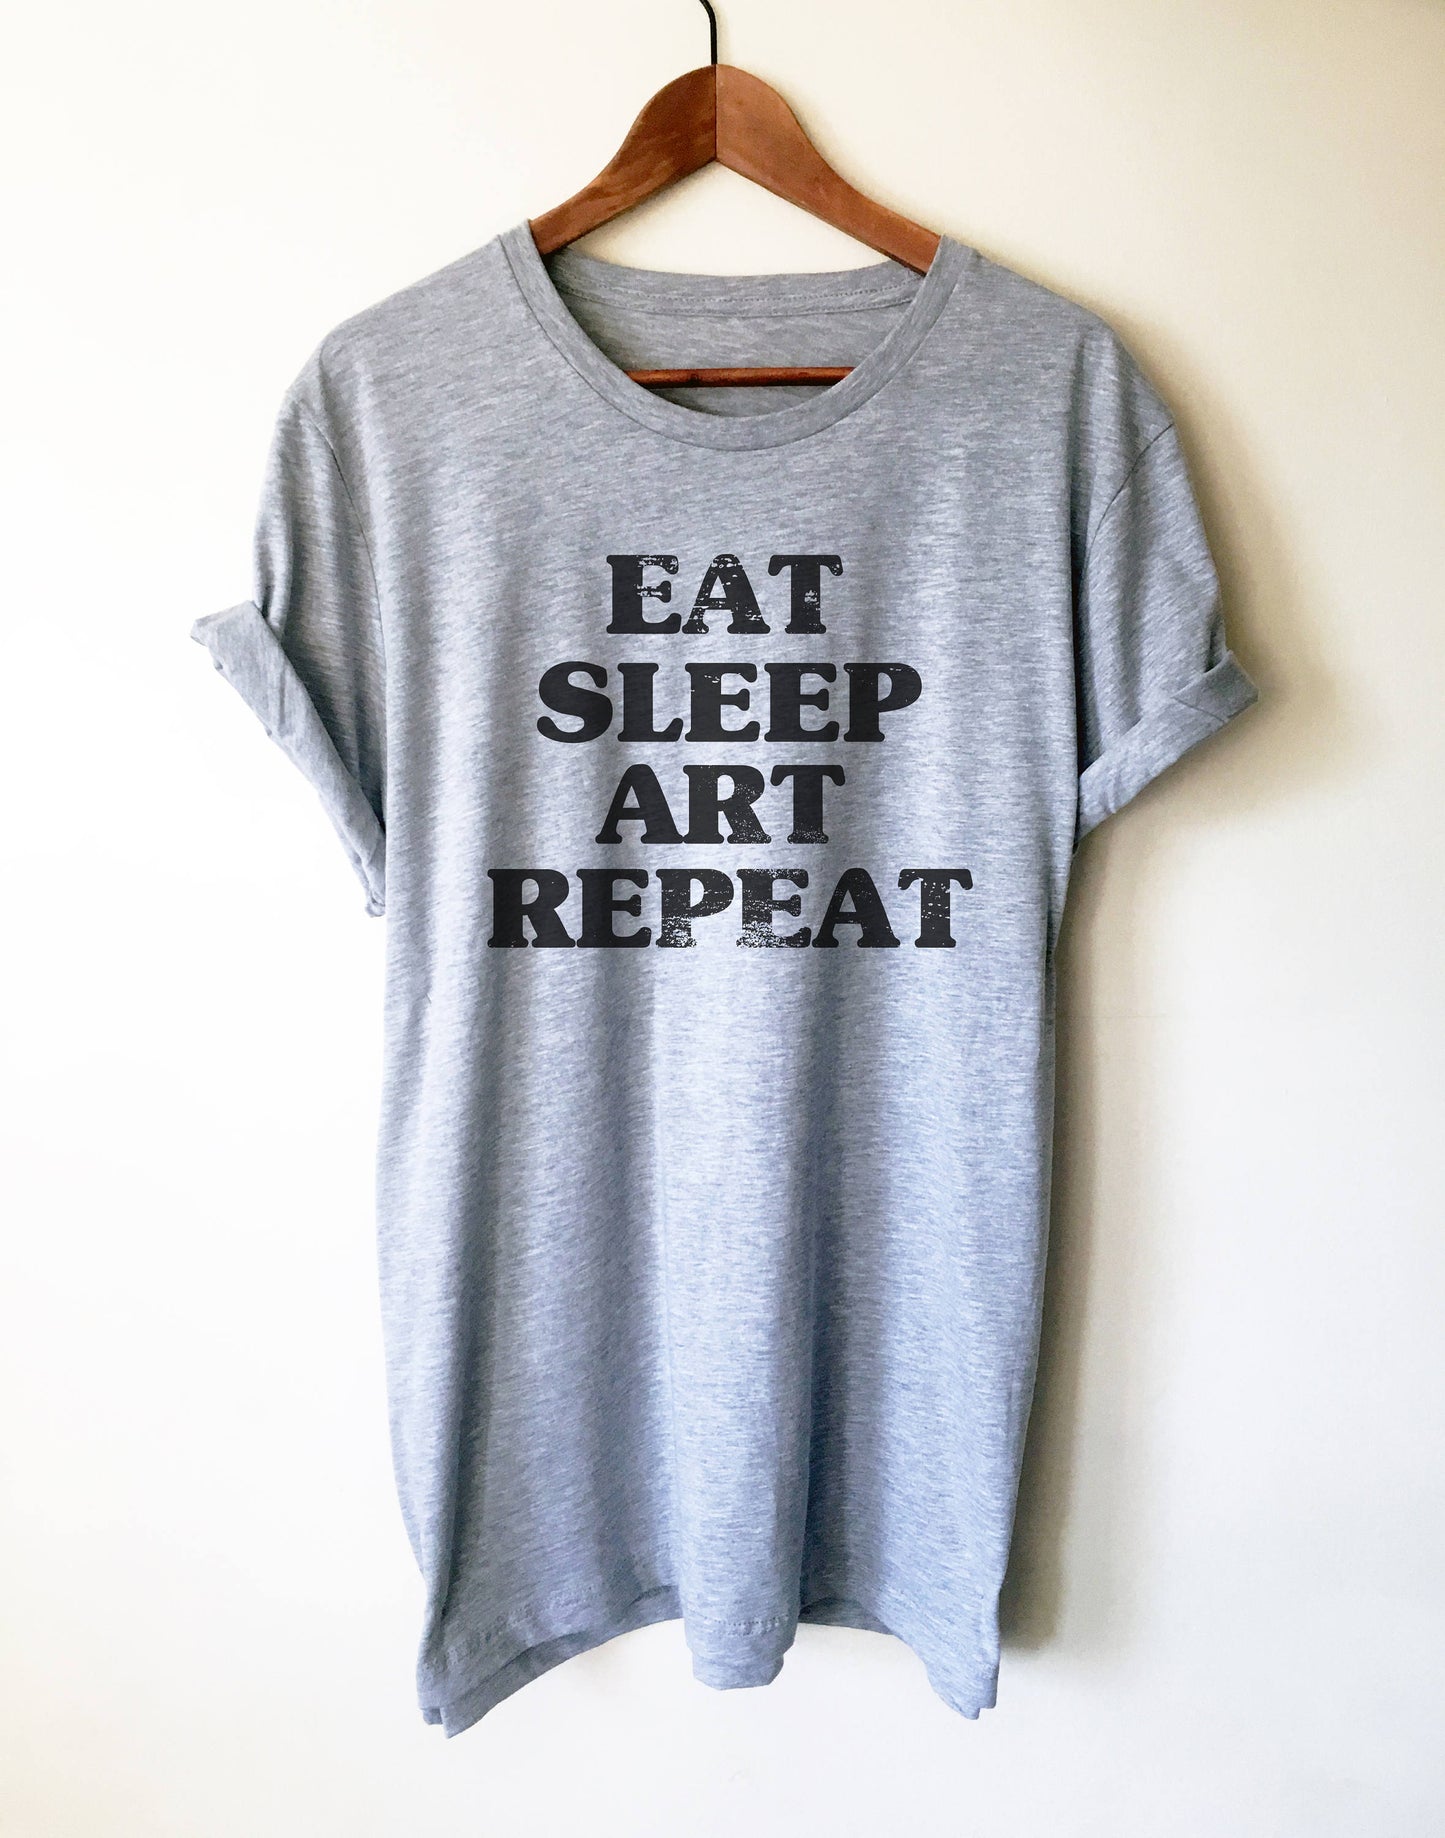 Eat Sleep Art Repeat Unisex Shirt - Artist shirt, Artist gift, Art Teacher Shirt, Painter Shirt, Graffiti artist, Gift for painter